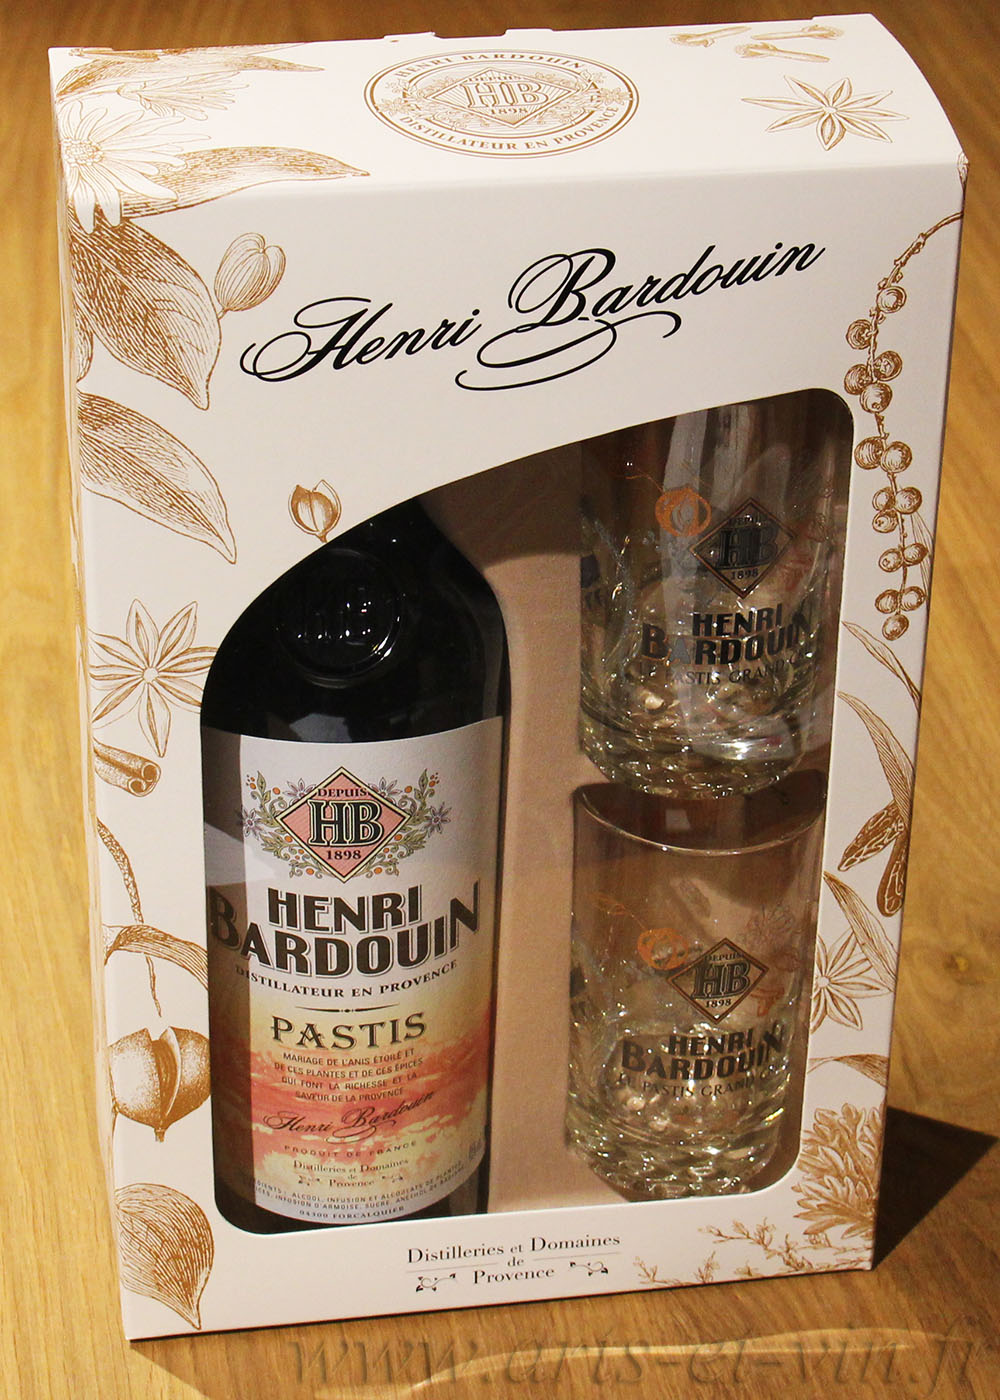 Coffret Pastis Henri Bardouin 2 verres - Distillerie de Provence